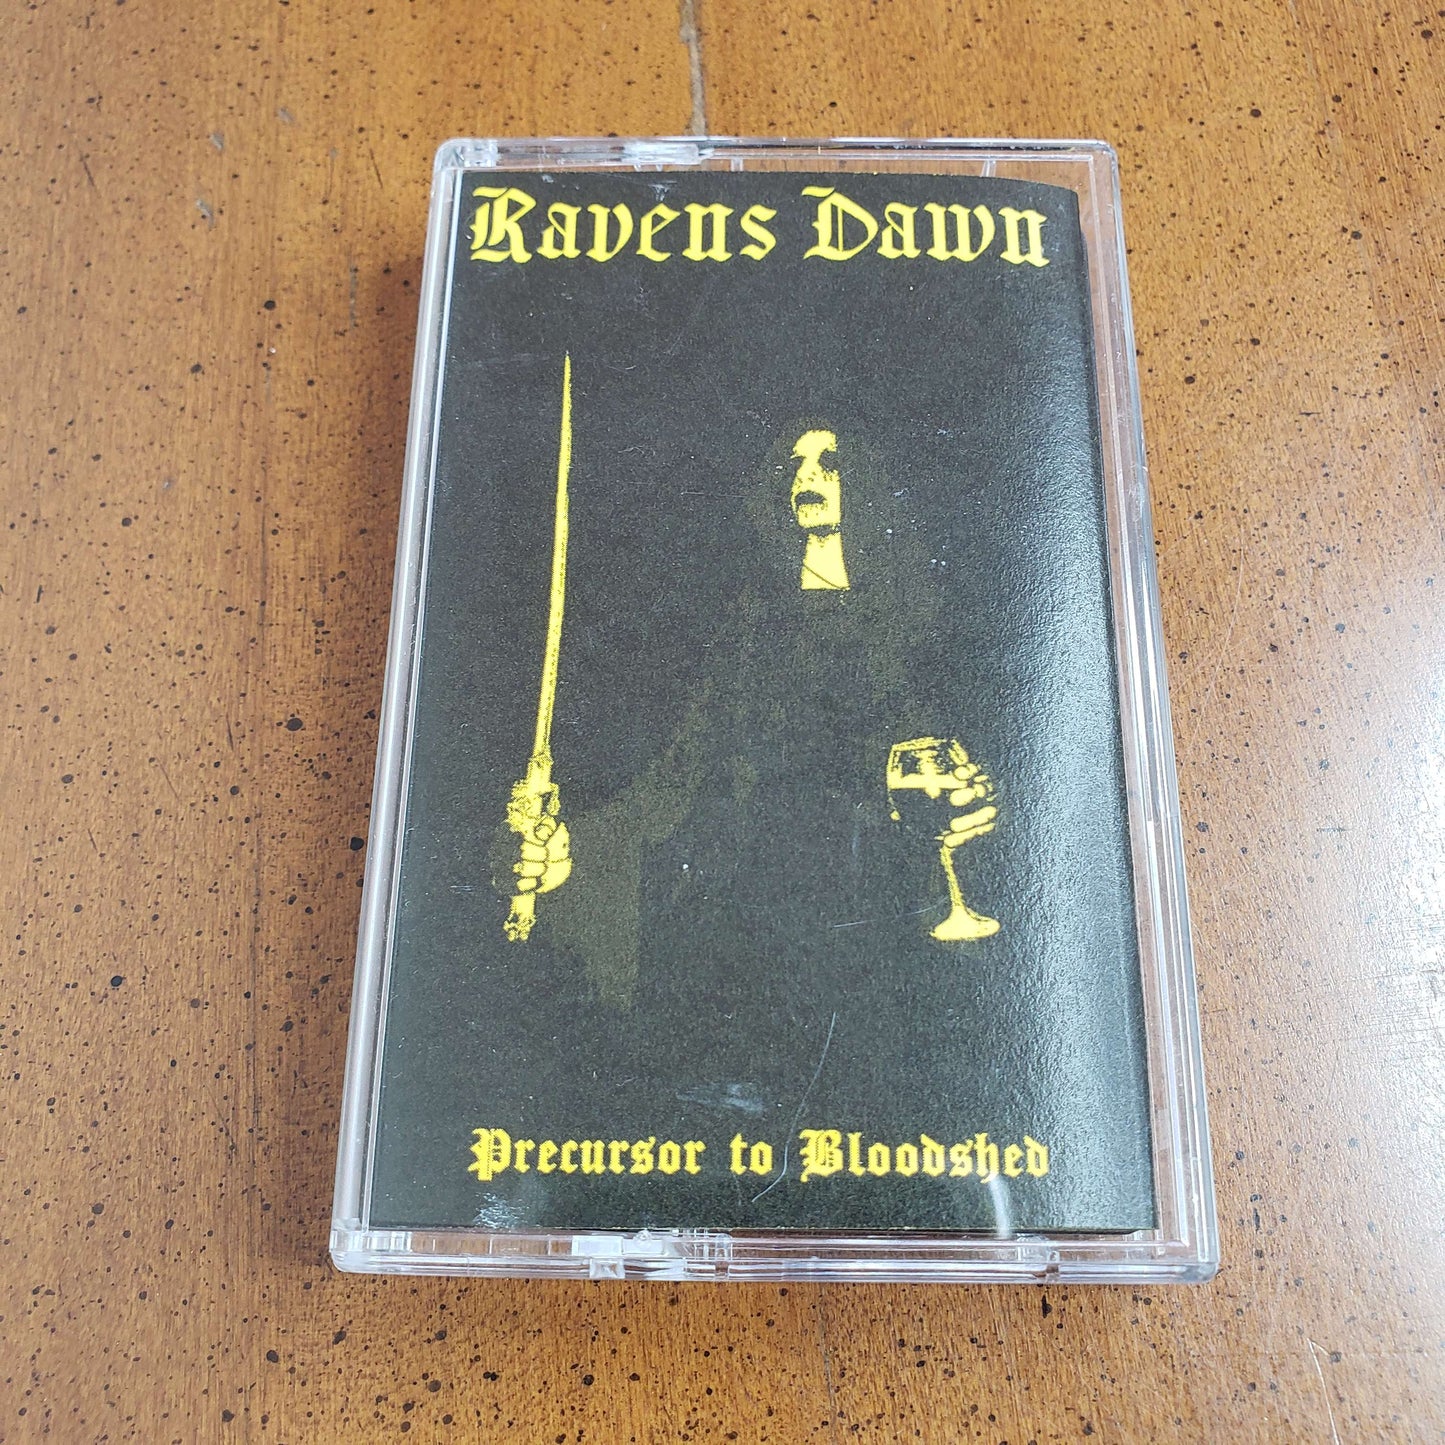 Ravens Dawn - Precursor to Bloodshed cassette tape